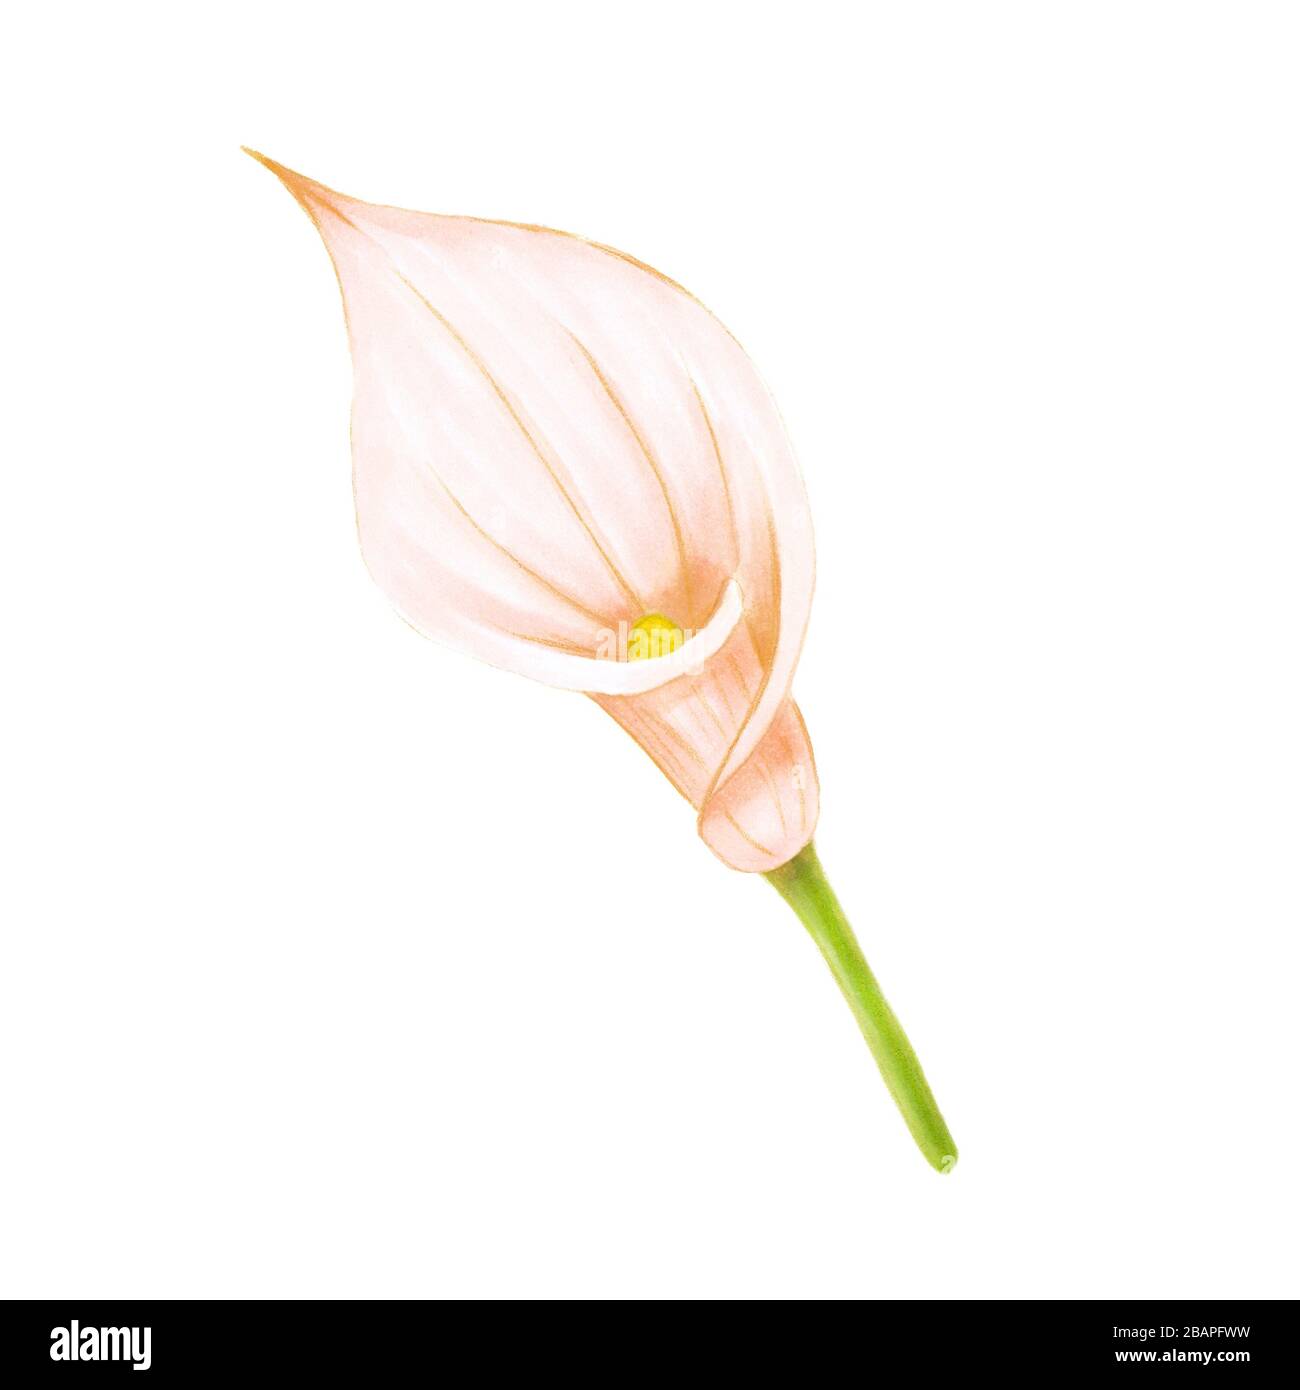 Dessin à la main doux rose-beige calla lily sur fond blanc. Élément exotique décoratif pour les cartes d'invitation, le textile, l'impression et le design. Banque D'Images